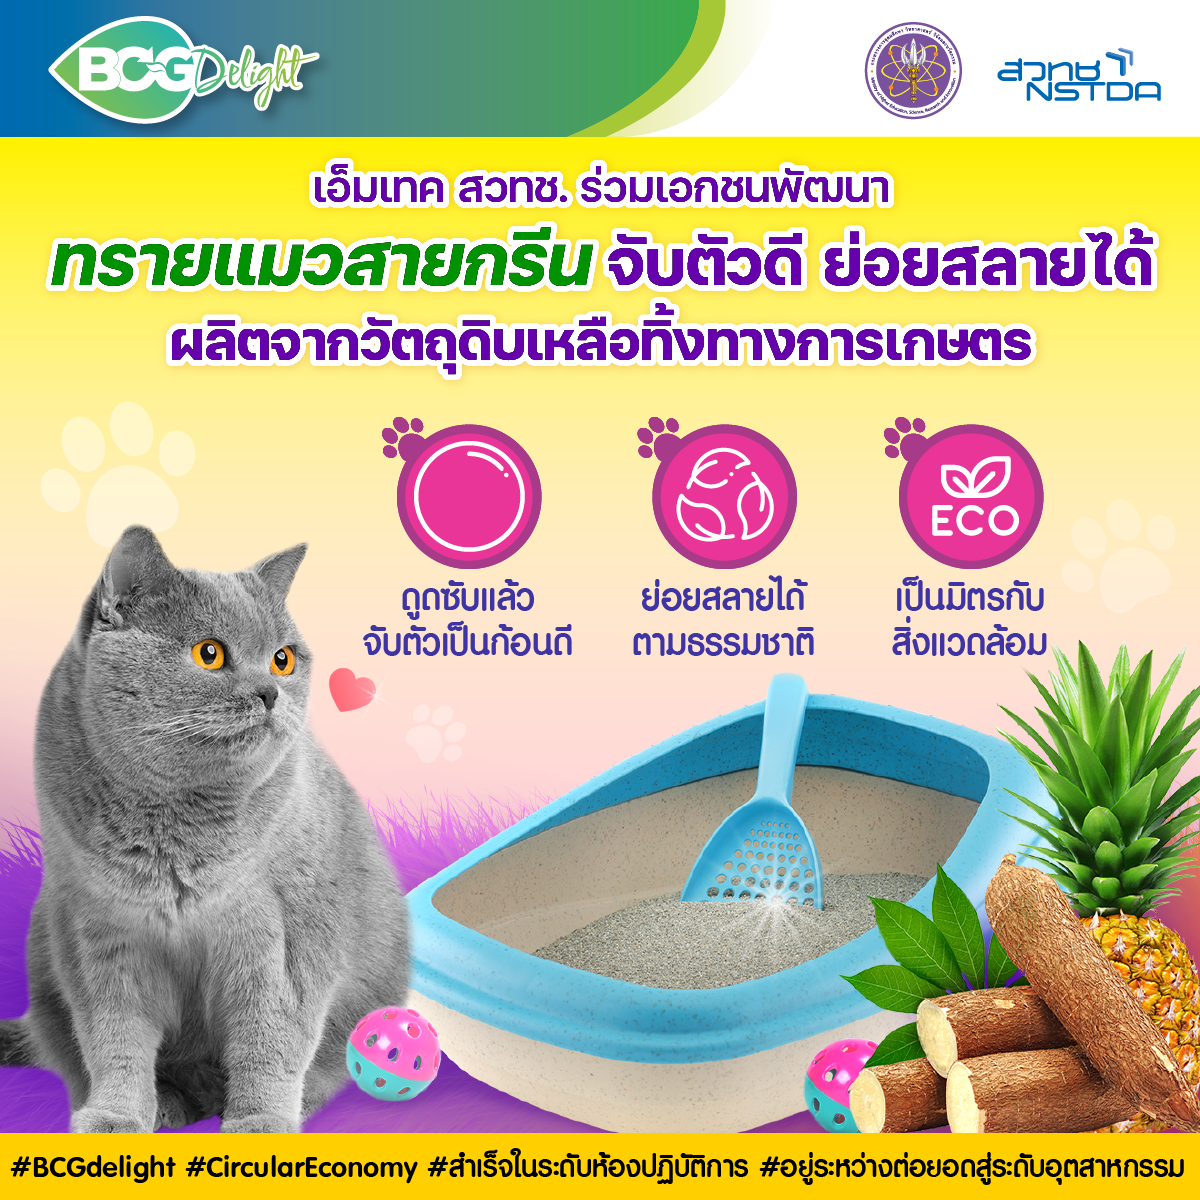 ‘ทรายแมวสายกรีน’ จับตัวดี ย่อยสลายได้ ผลิตจากวัตถุดิบเหลือทิ้งทางการเกษตร